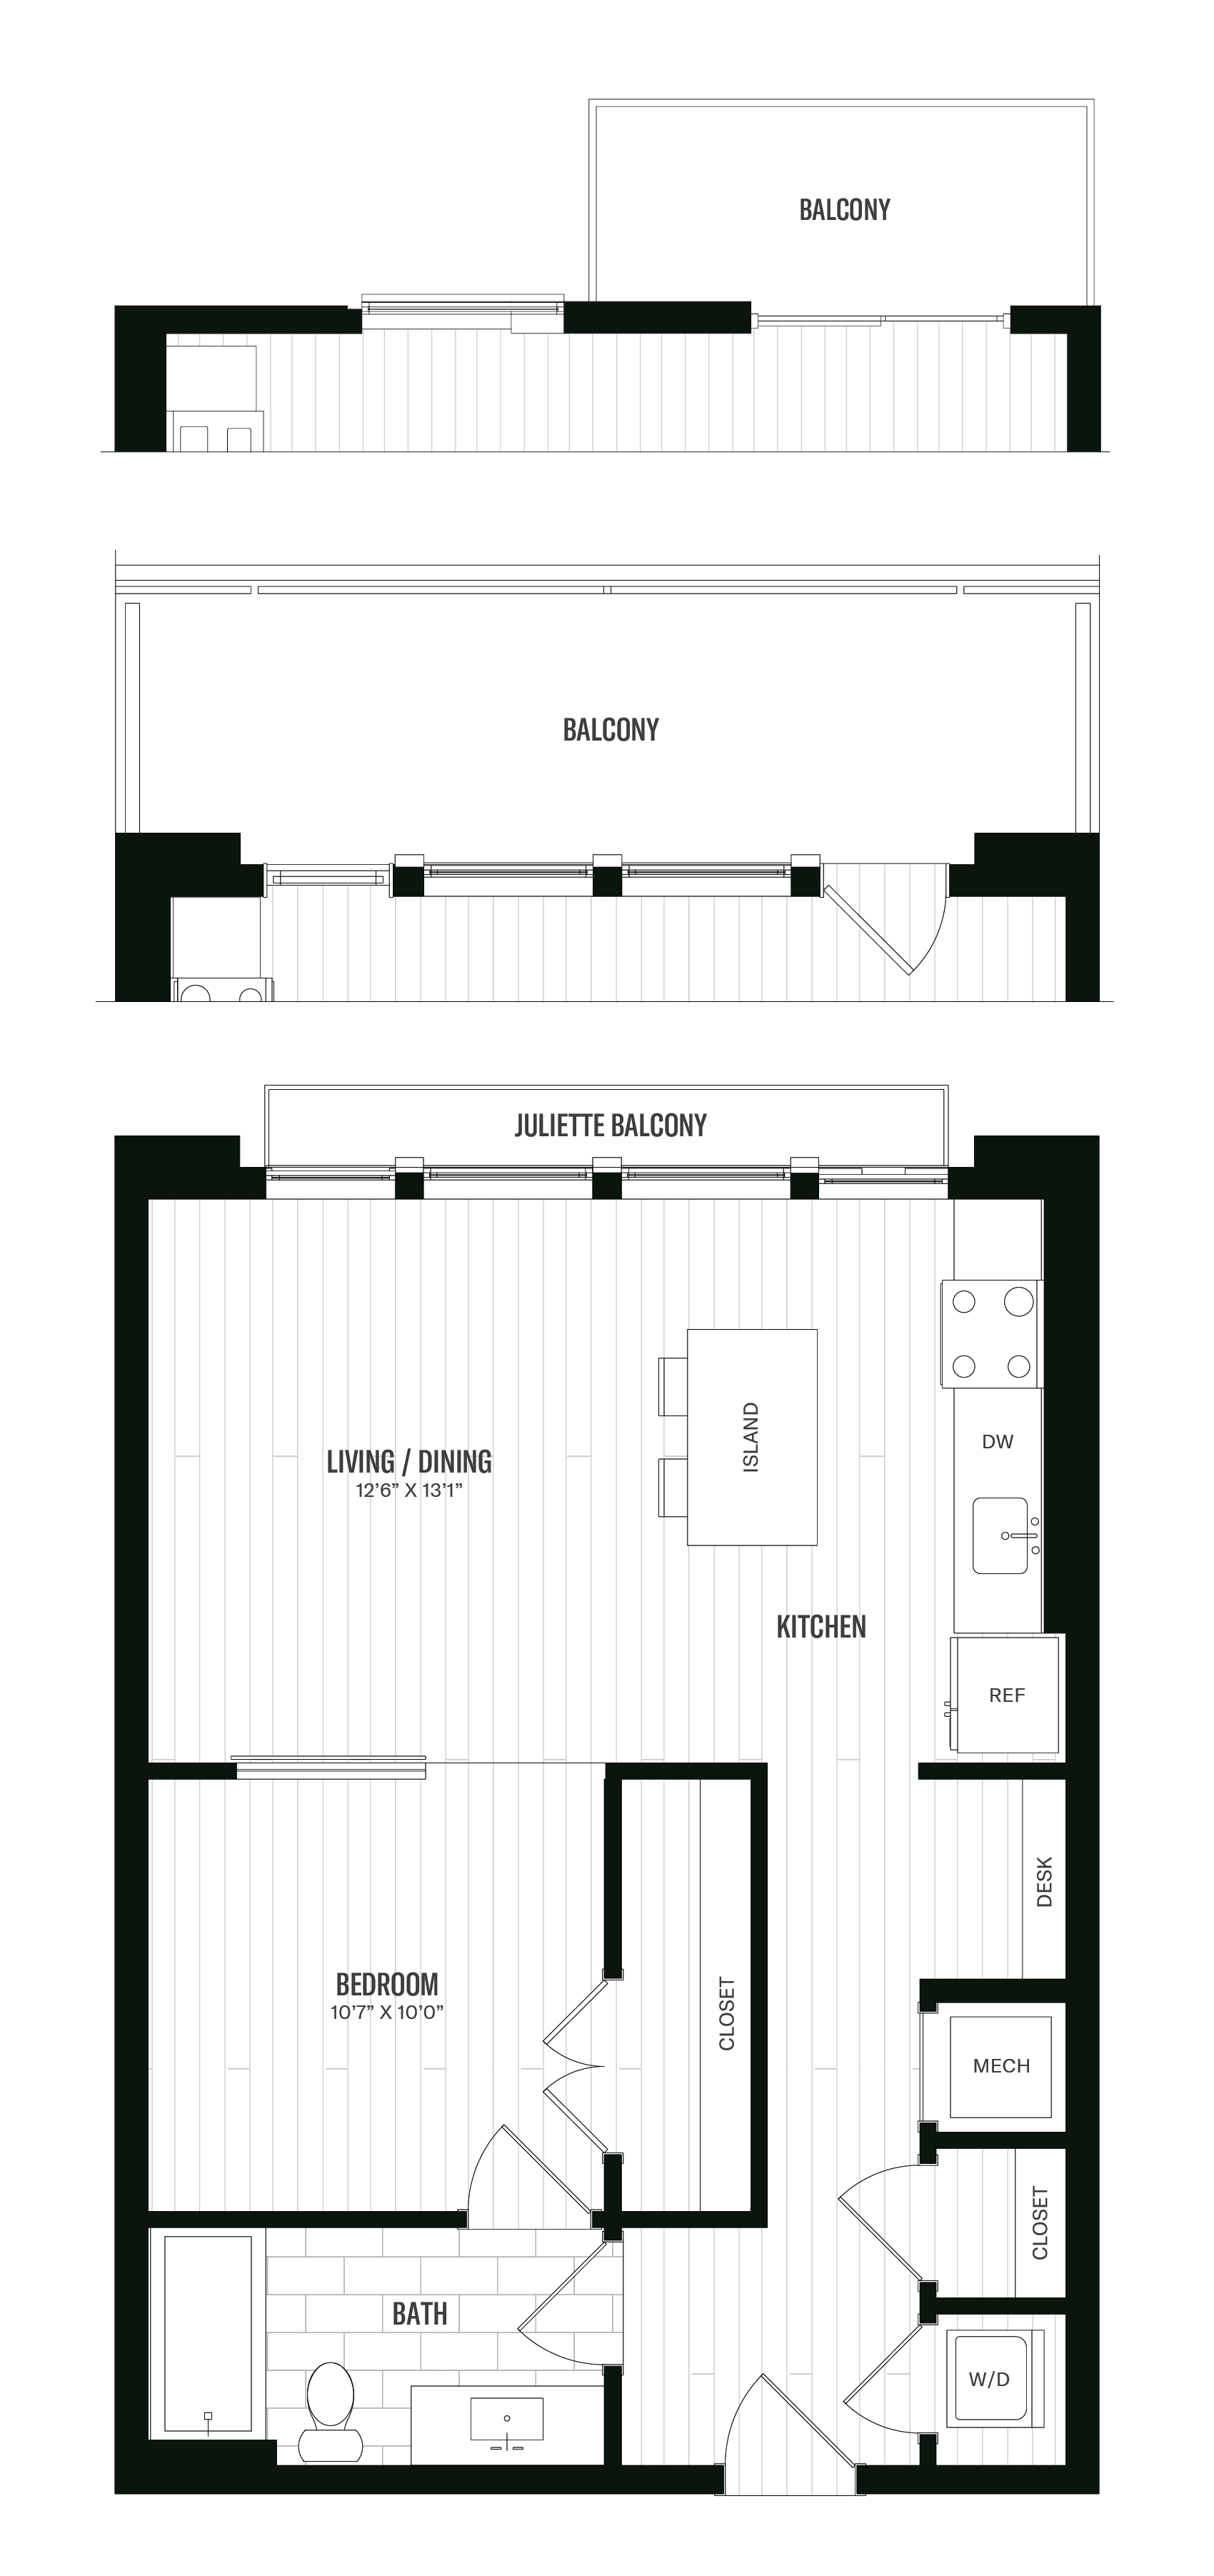 Floorplan image of unit 417